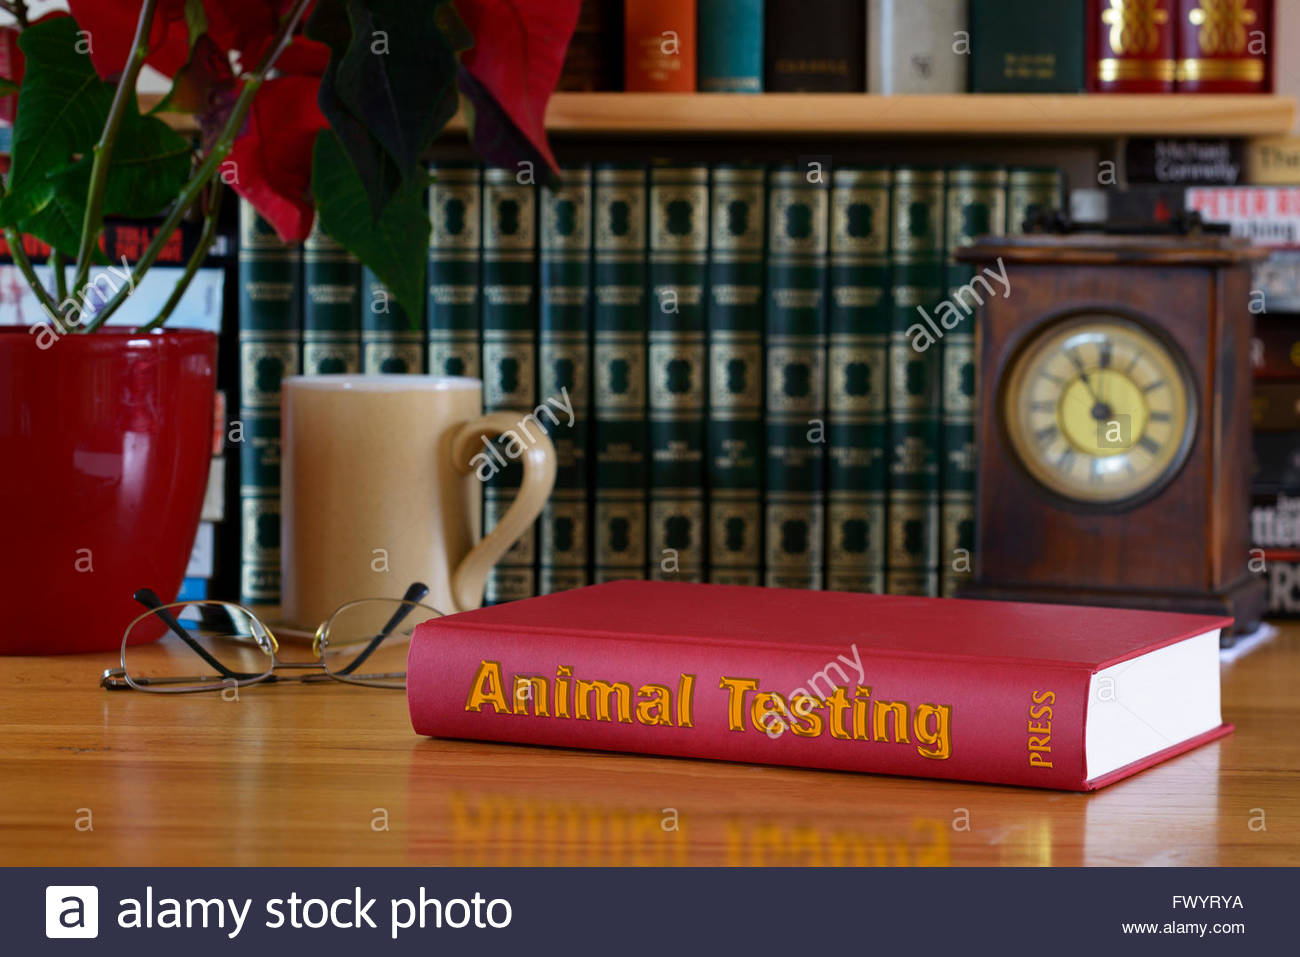 animal testing titles